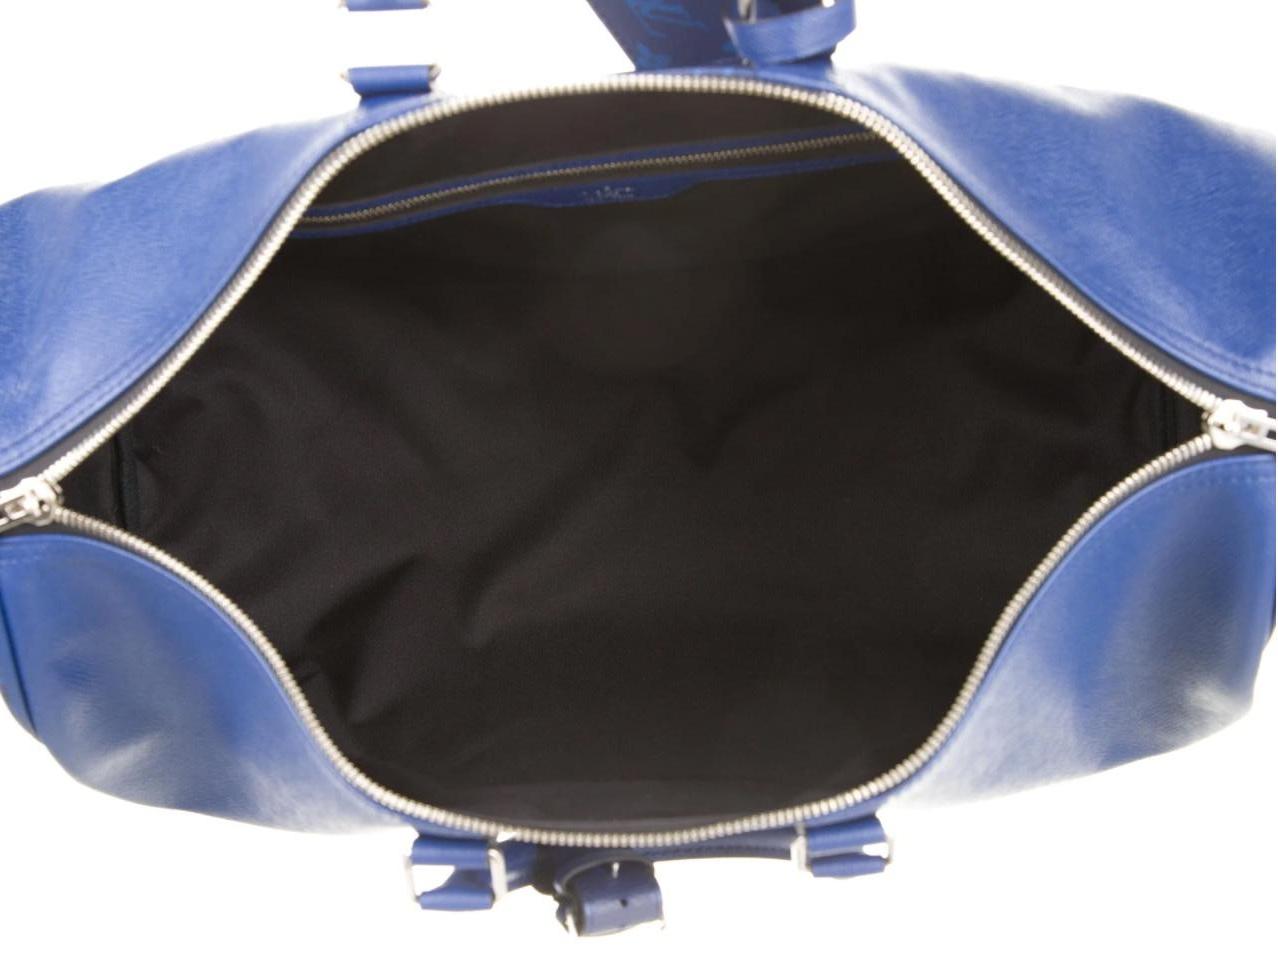 Louis Vuitton NEW Blue Men's Women's Carryall Travel Weekender Duffle Bag 2